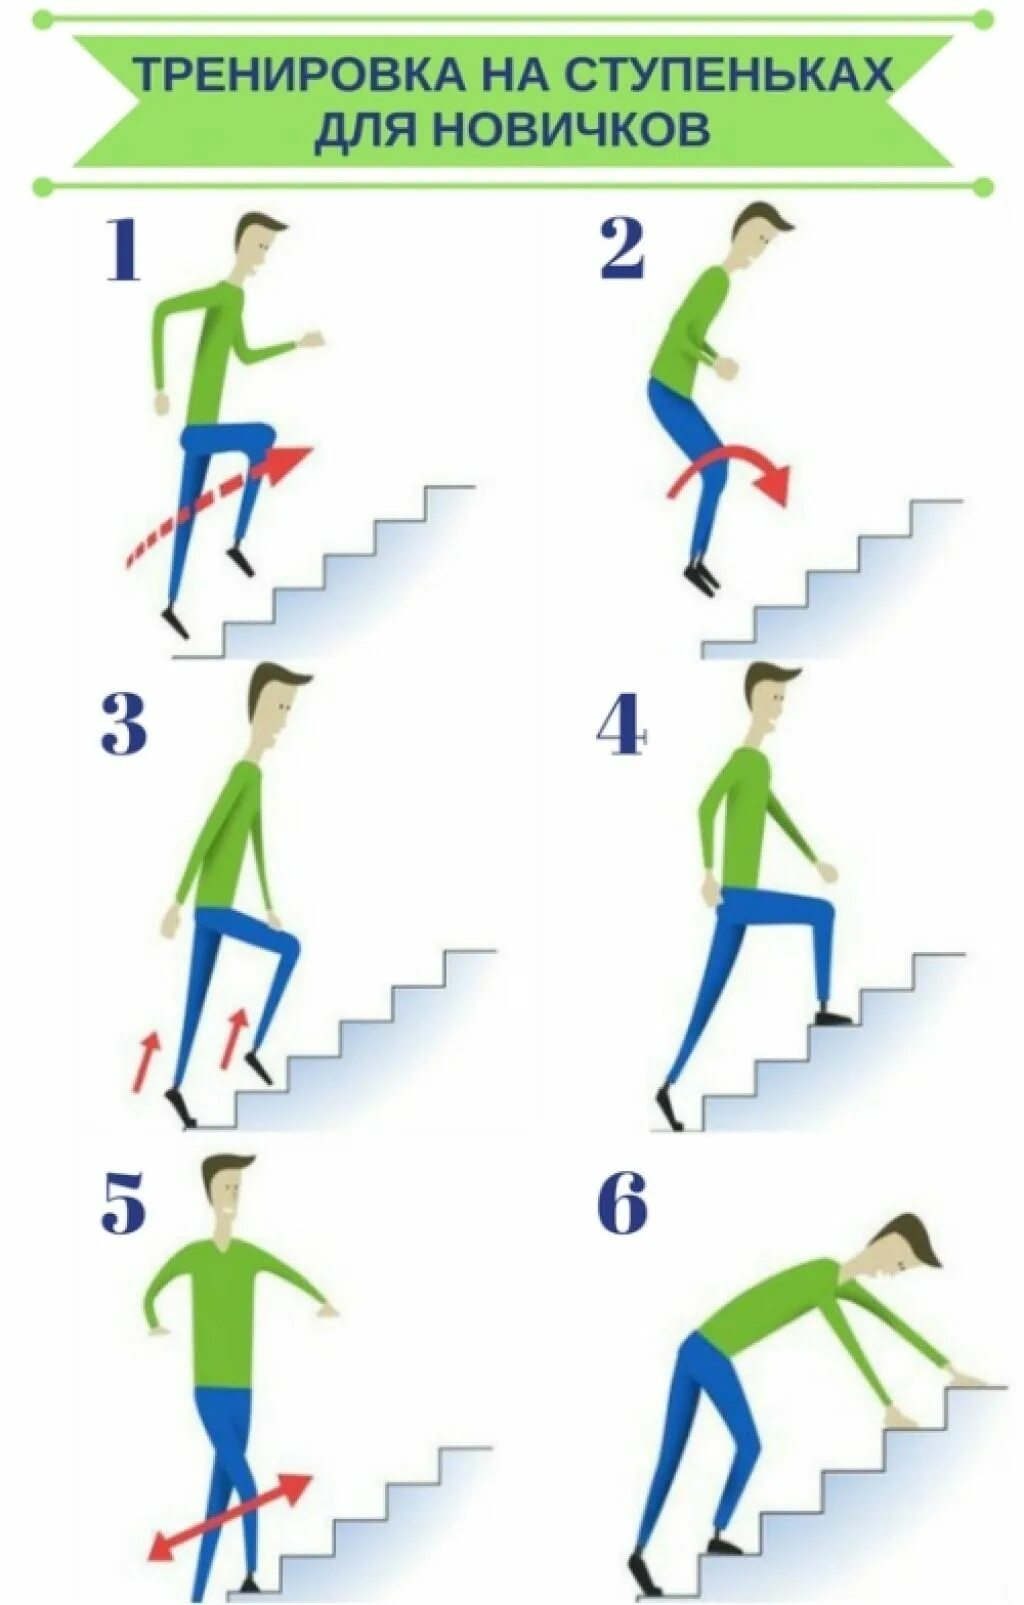 Подъем до 5 этаж калории. Упражнения на ступеньках лестницы для похудения. Упражнение лестница для похудения. Упражнение подъем по ступенькам. Лестница для упражнений в ходьбе.